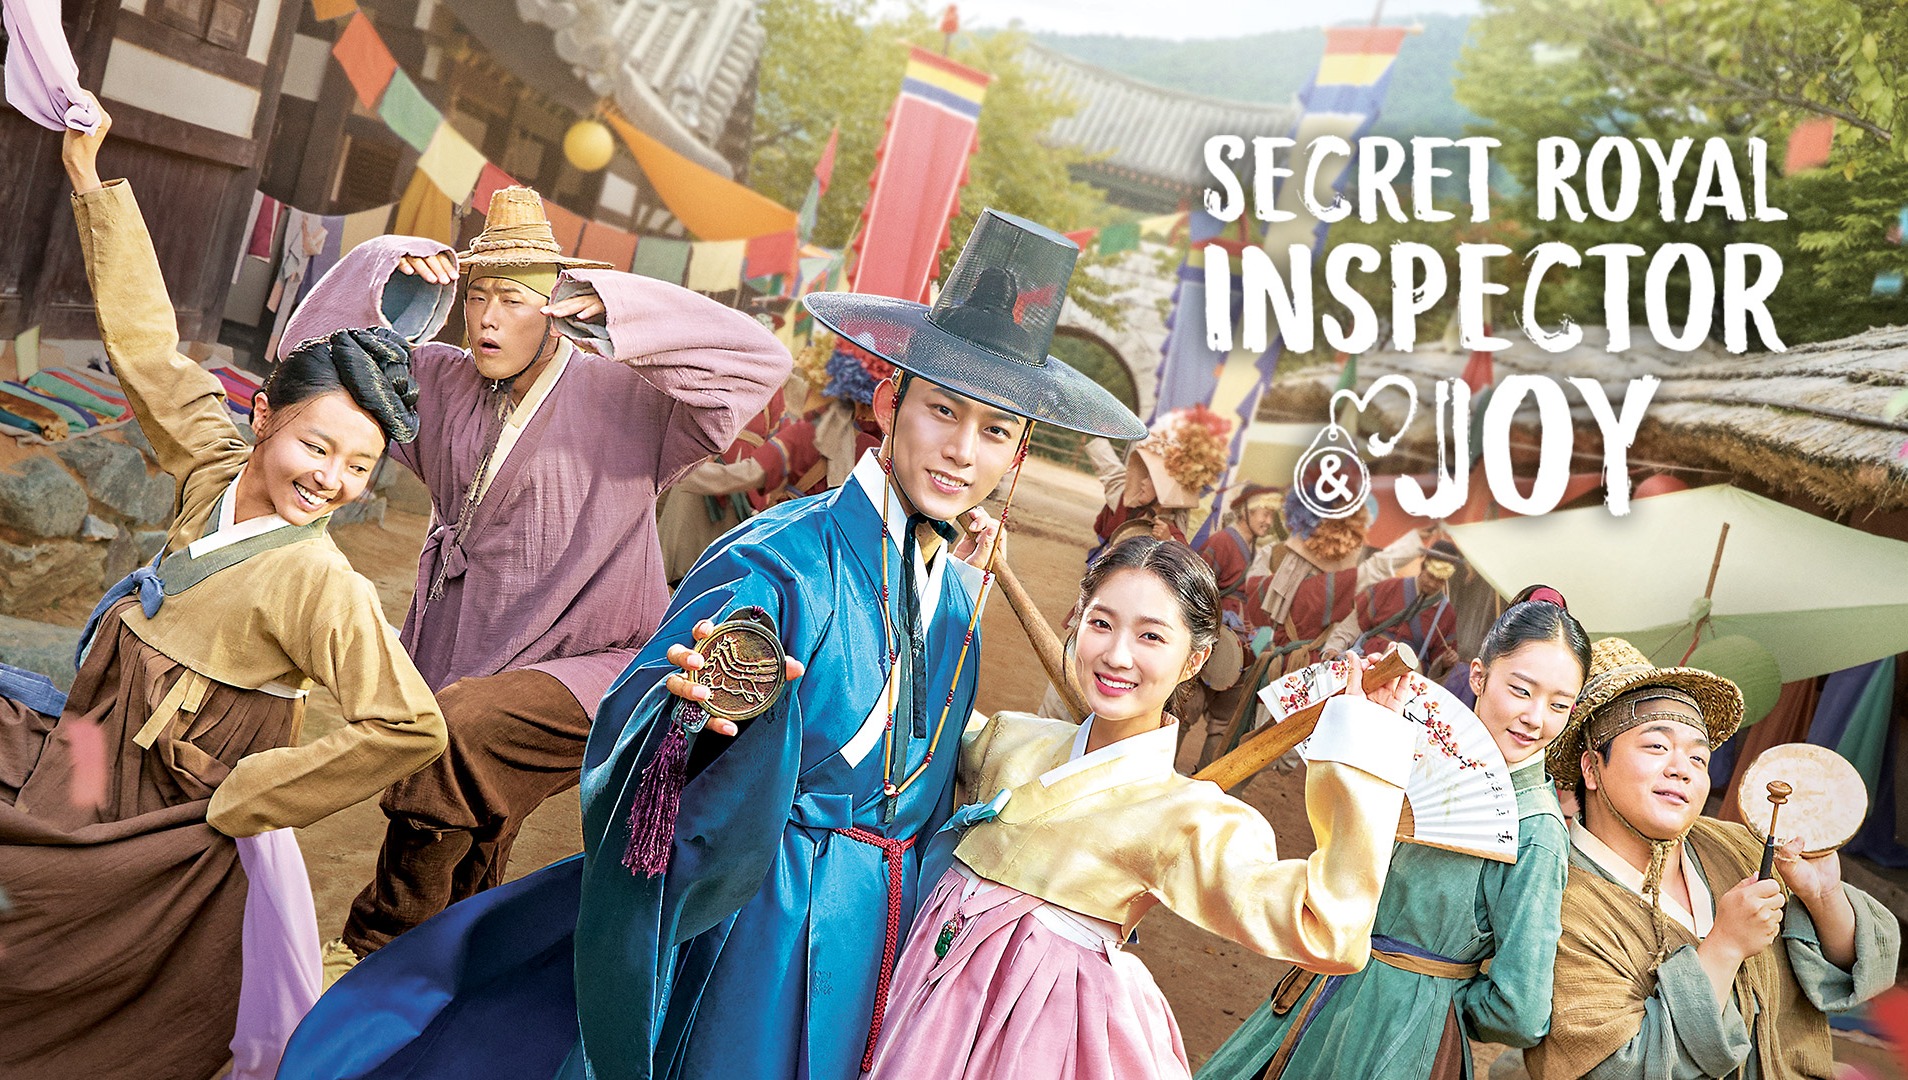 Inspector secret joy royal Secret Royal